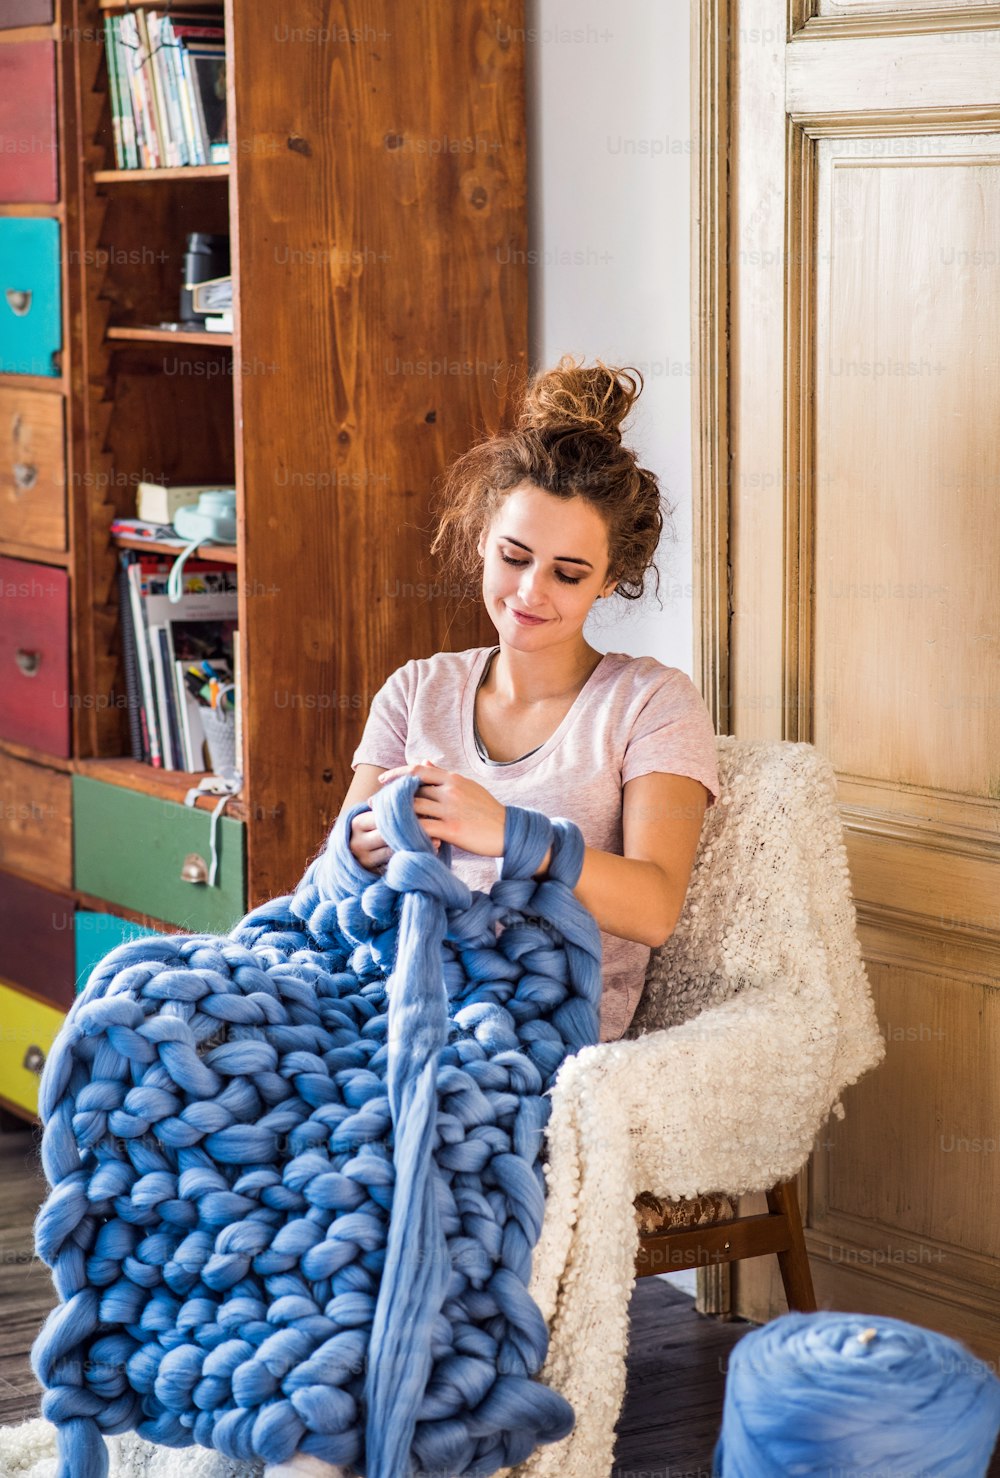 Petite entreprise d’une jeune femme. Jeune femme tricotant à la main une couverture de laine.